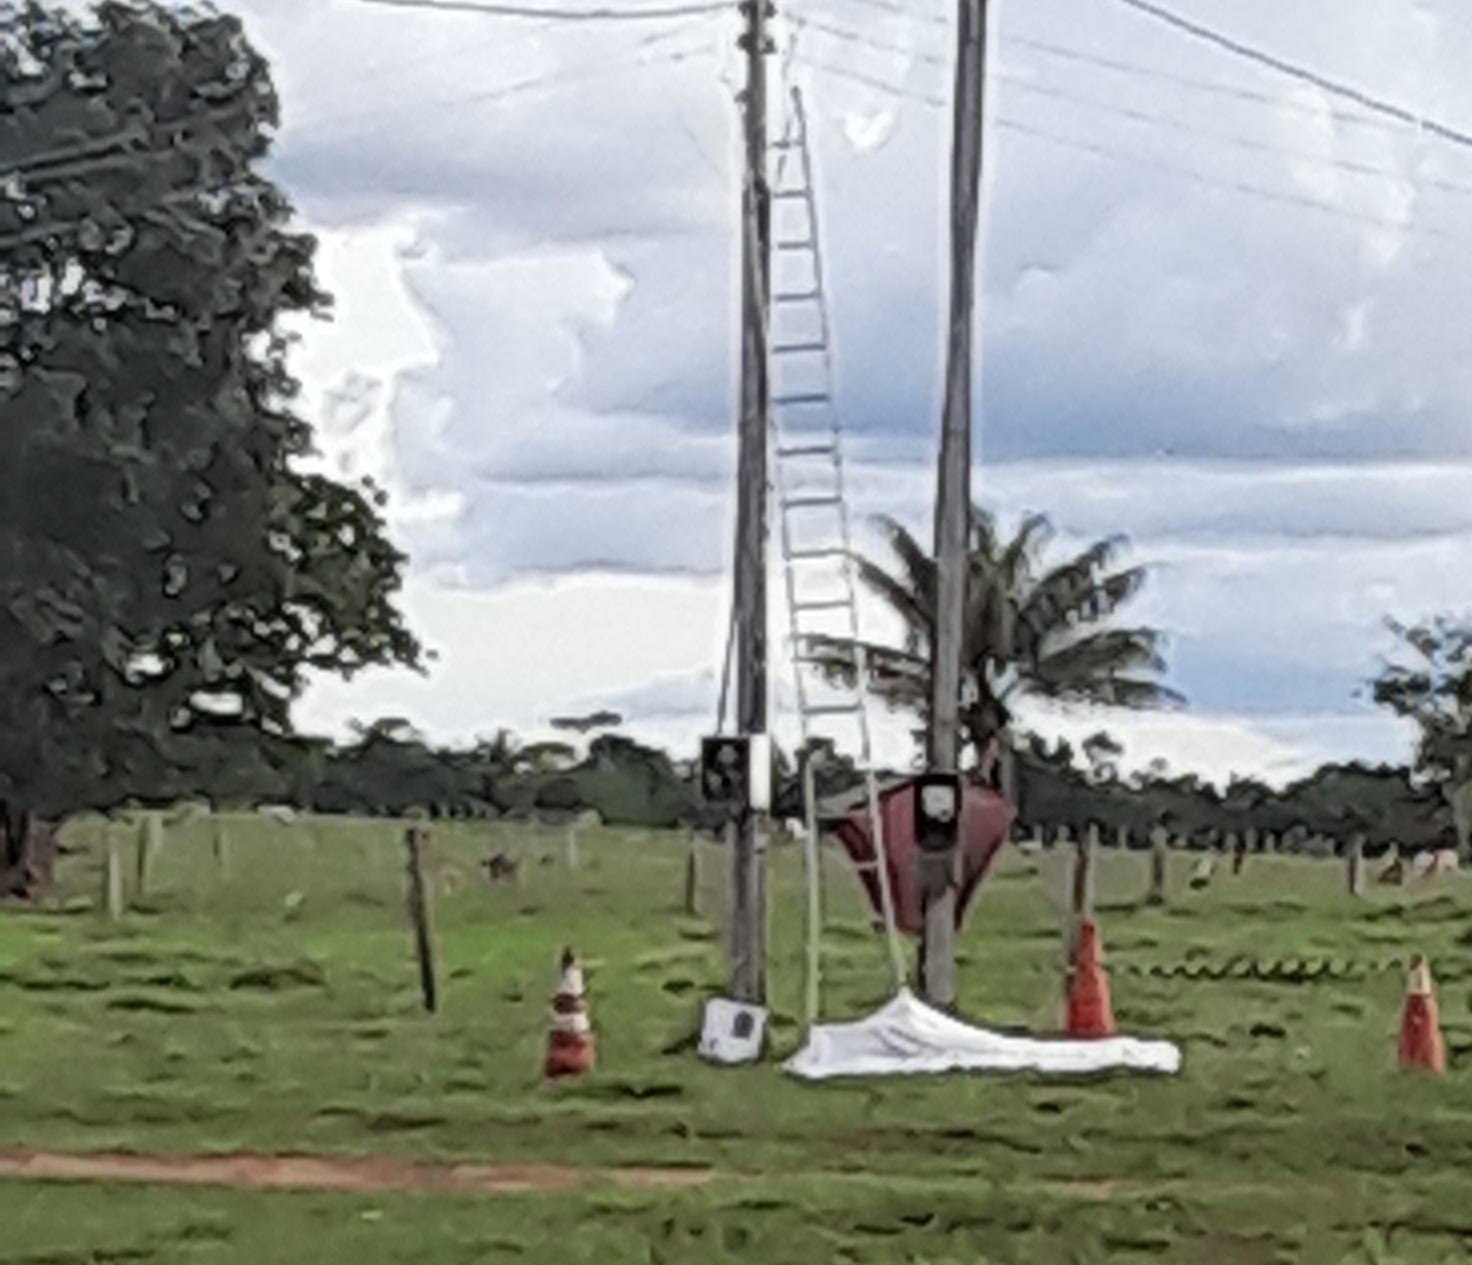 Homem morre eletrocutado durante trabalho em rede elétrica, em Rondônia